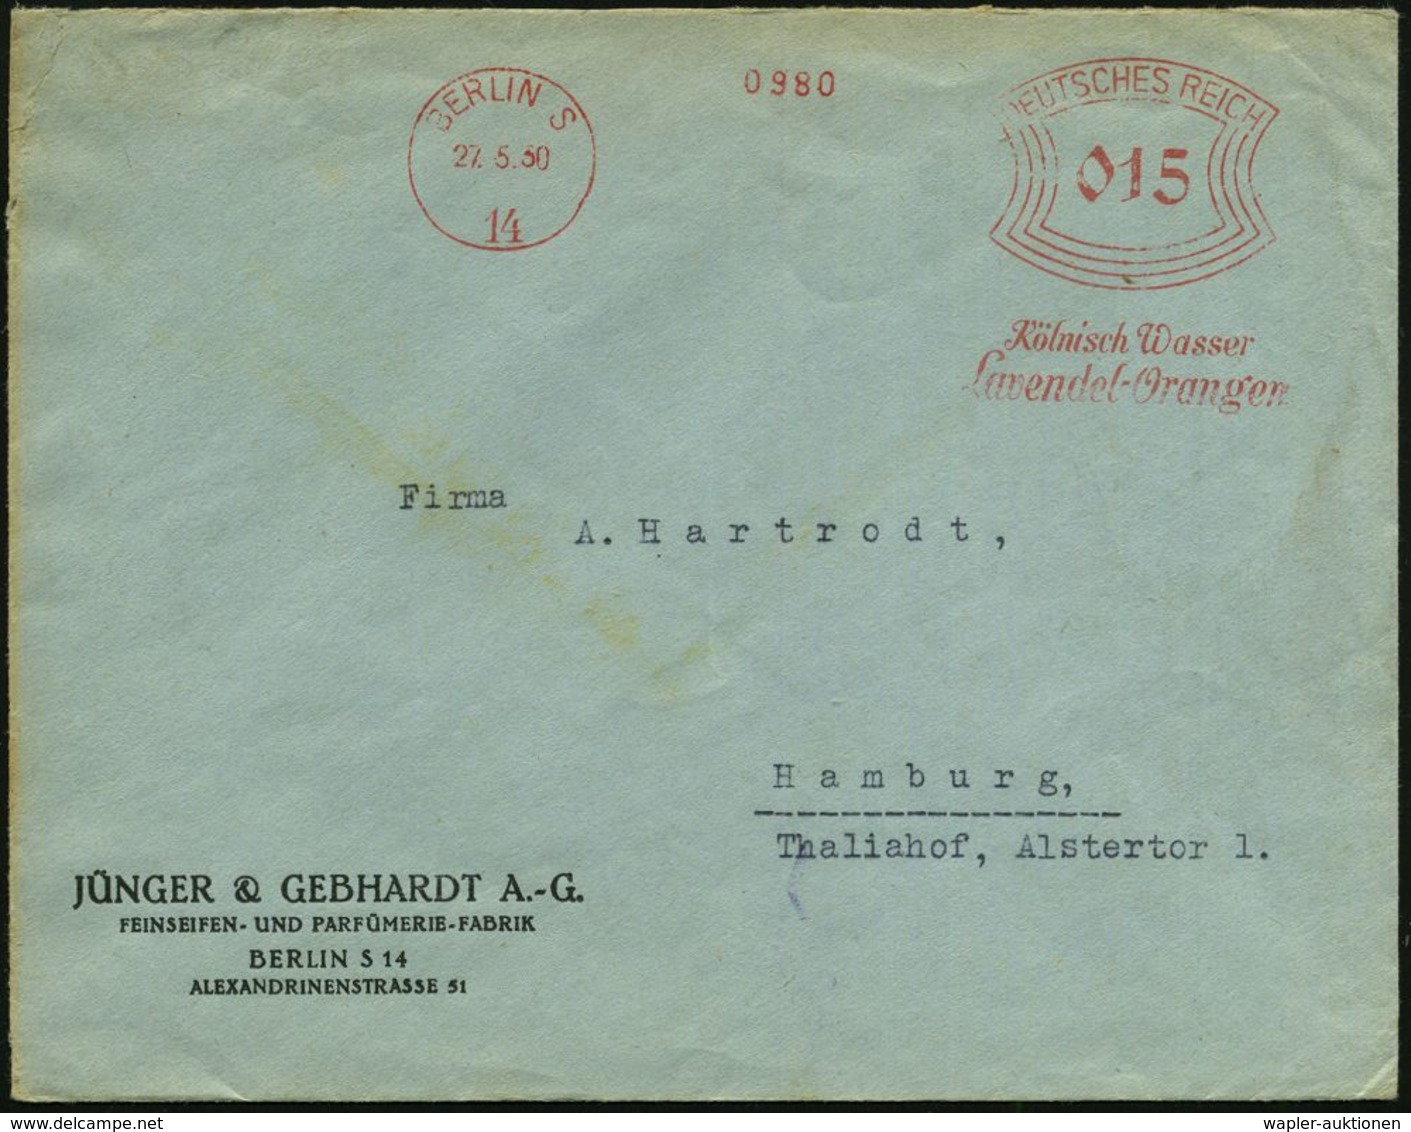 KOSMETIK / PARFÜM : BERLIN S/ 14/ Kölnisch Wasser/ Lavendel-Orangen 1930 (27.5.) AFS Auf Firmen-Bf.: JÜNGER & GEBHARDT A - Pharmacie